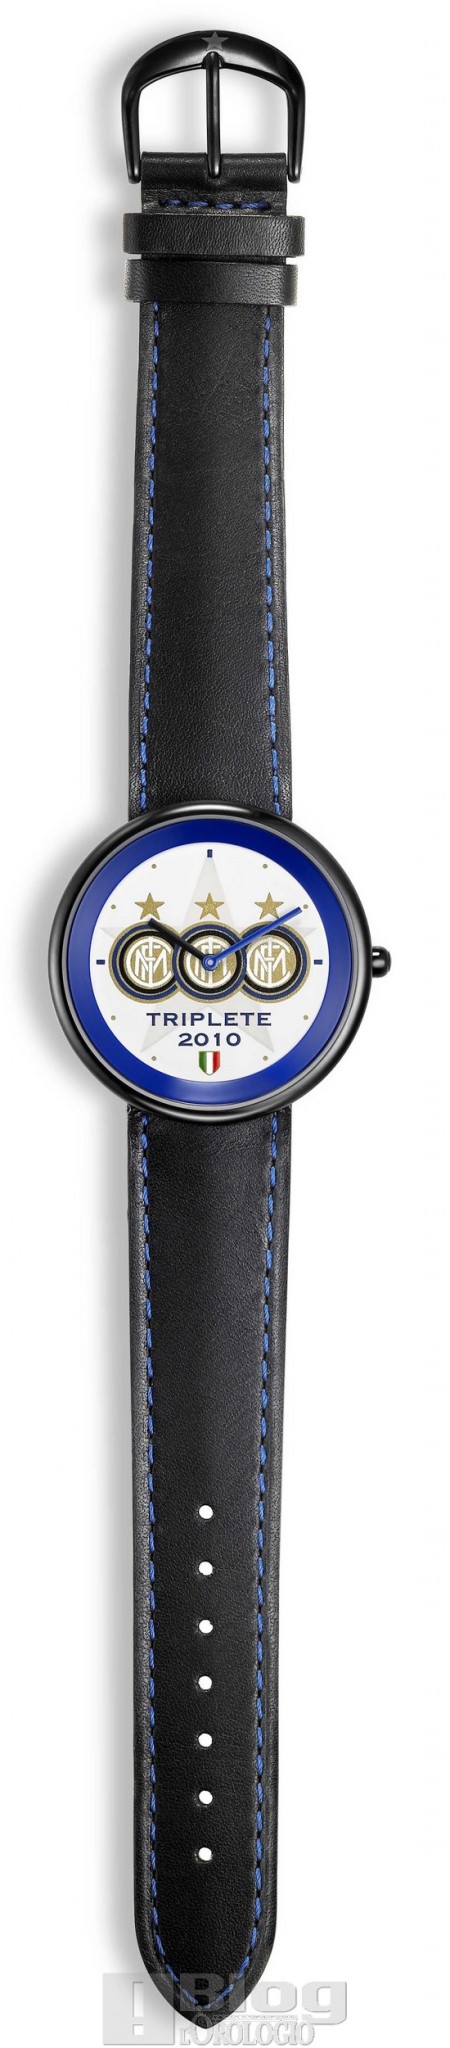 L'orologio ufficiale dell'Inter - L'Orologio